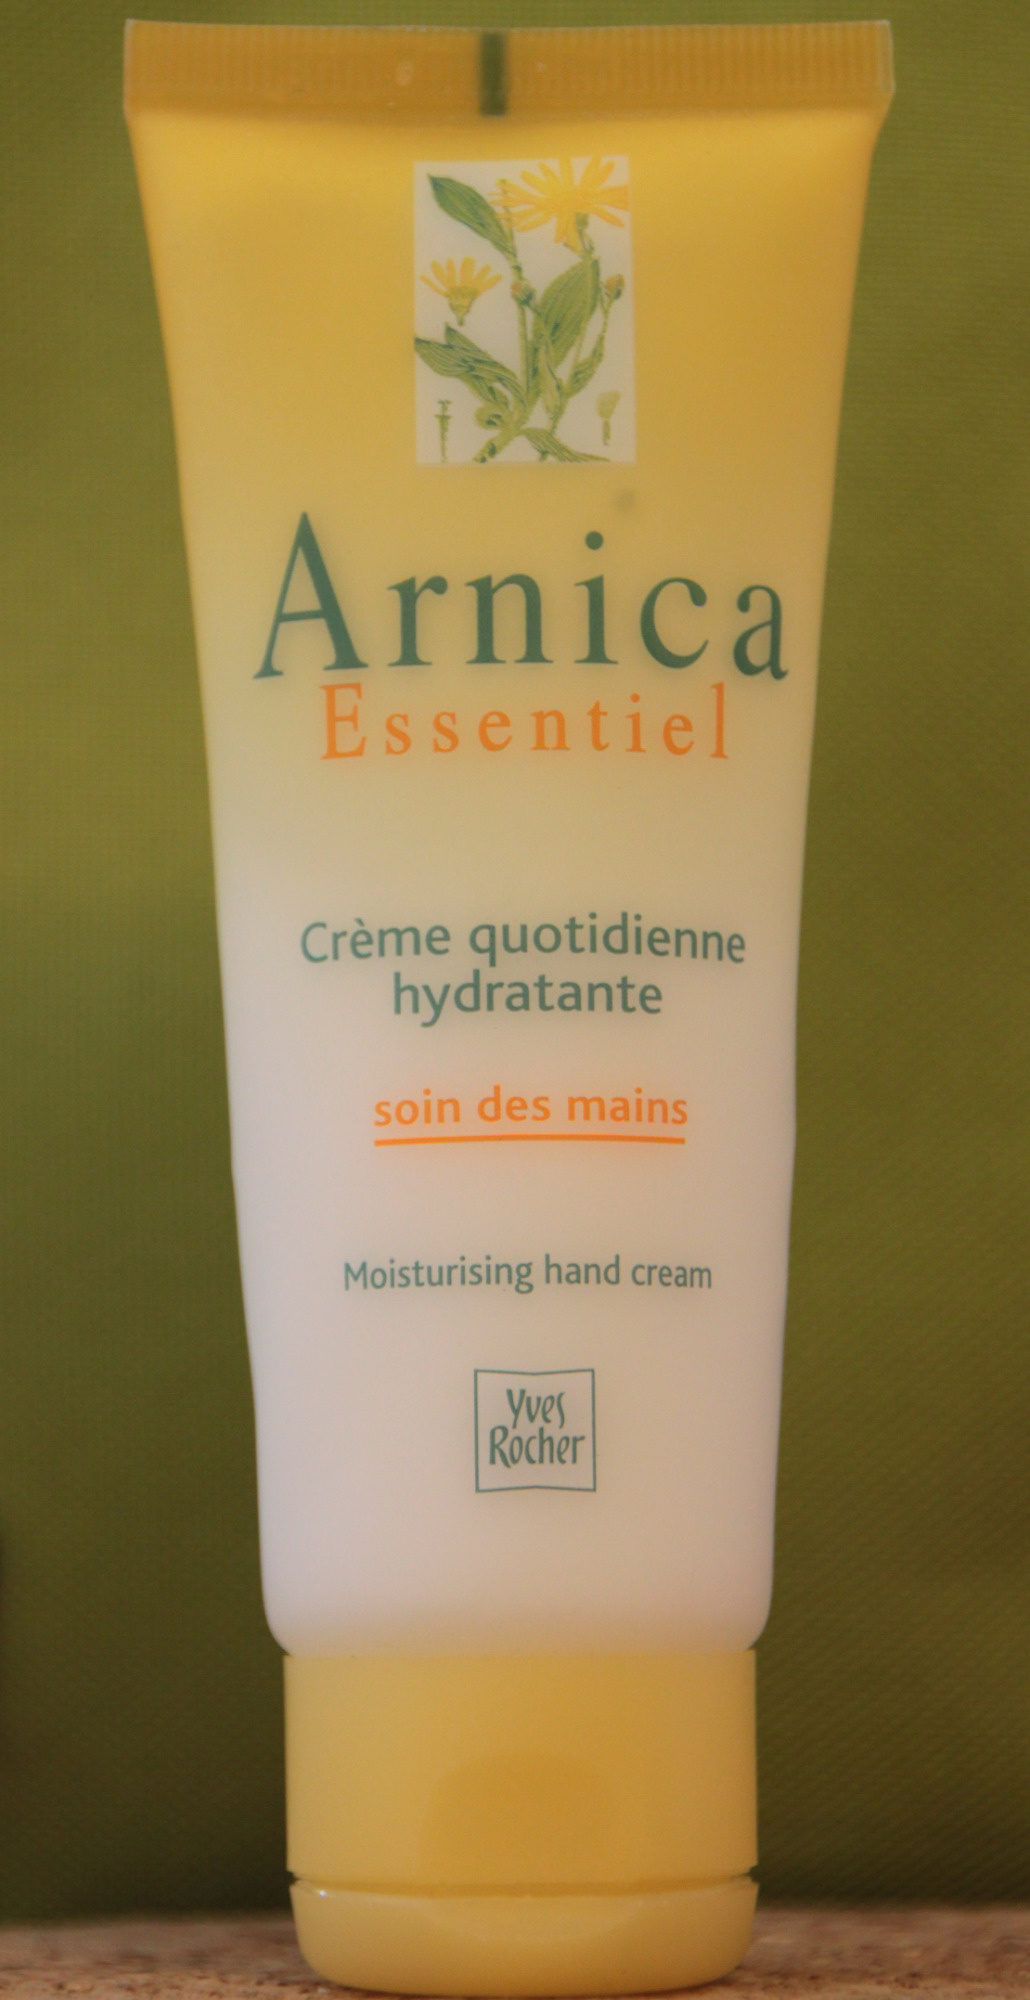 Crème quotidienne hydratante soin des mains - Product - fr